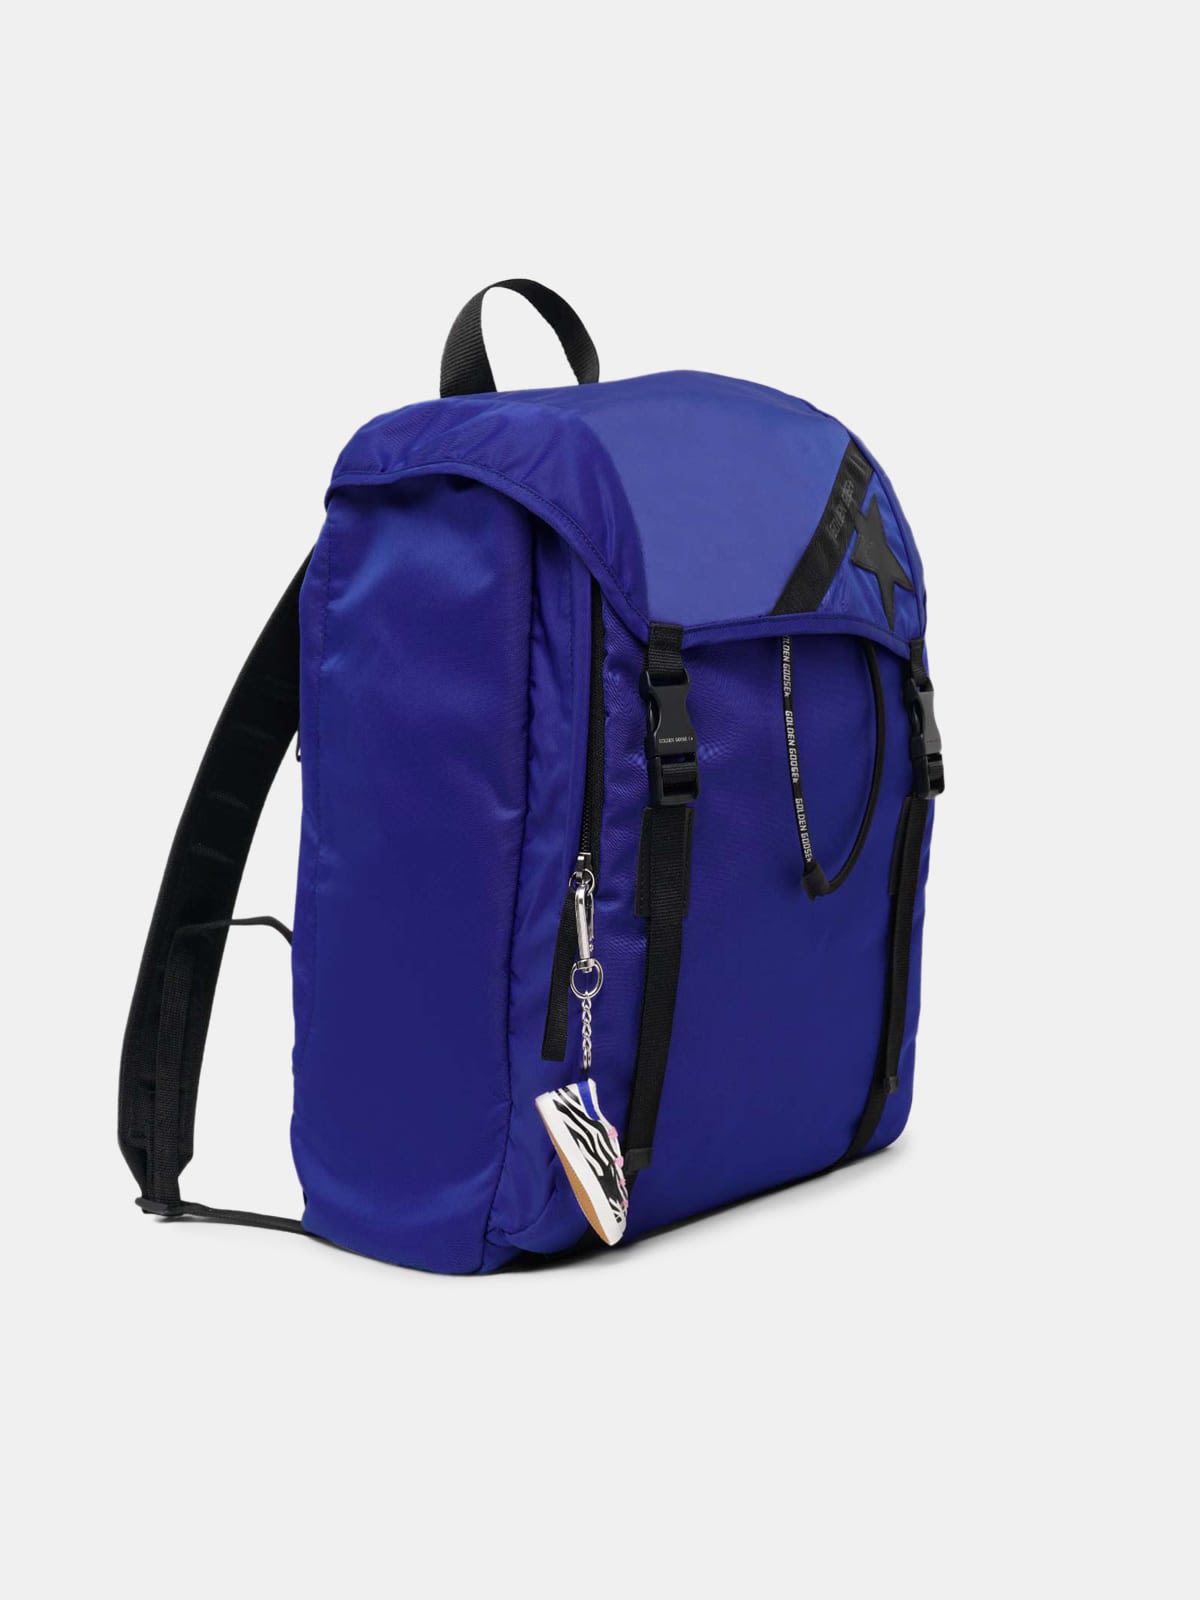 Royal blue nylon Journey backpack